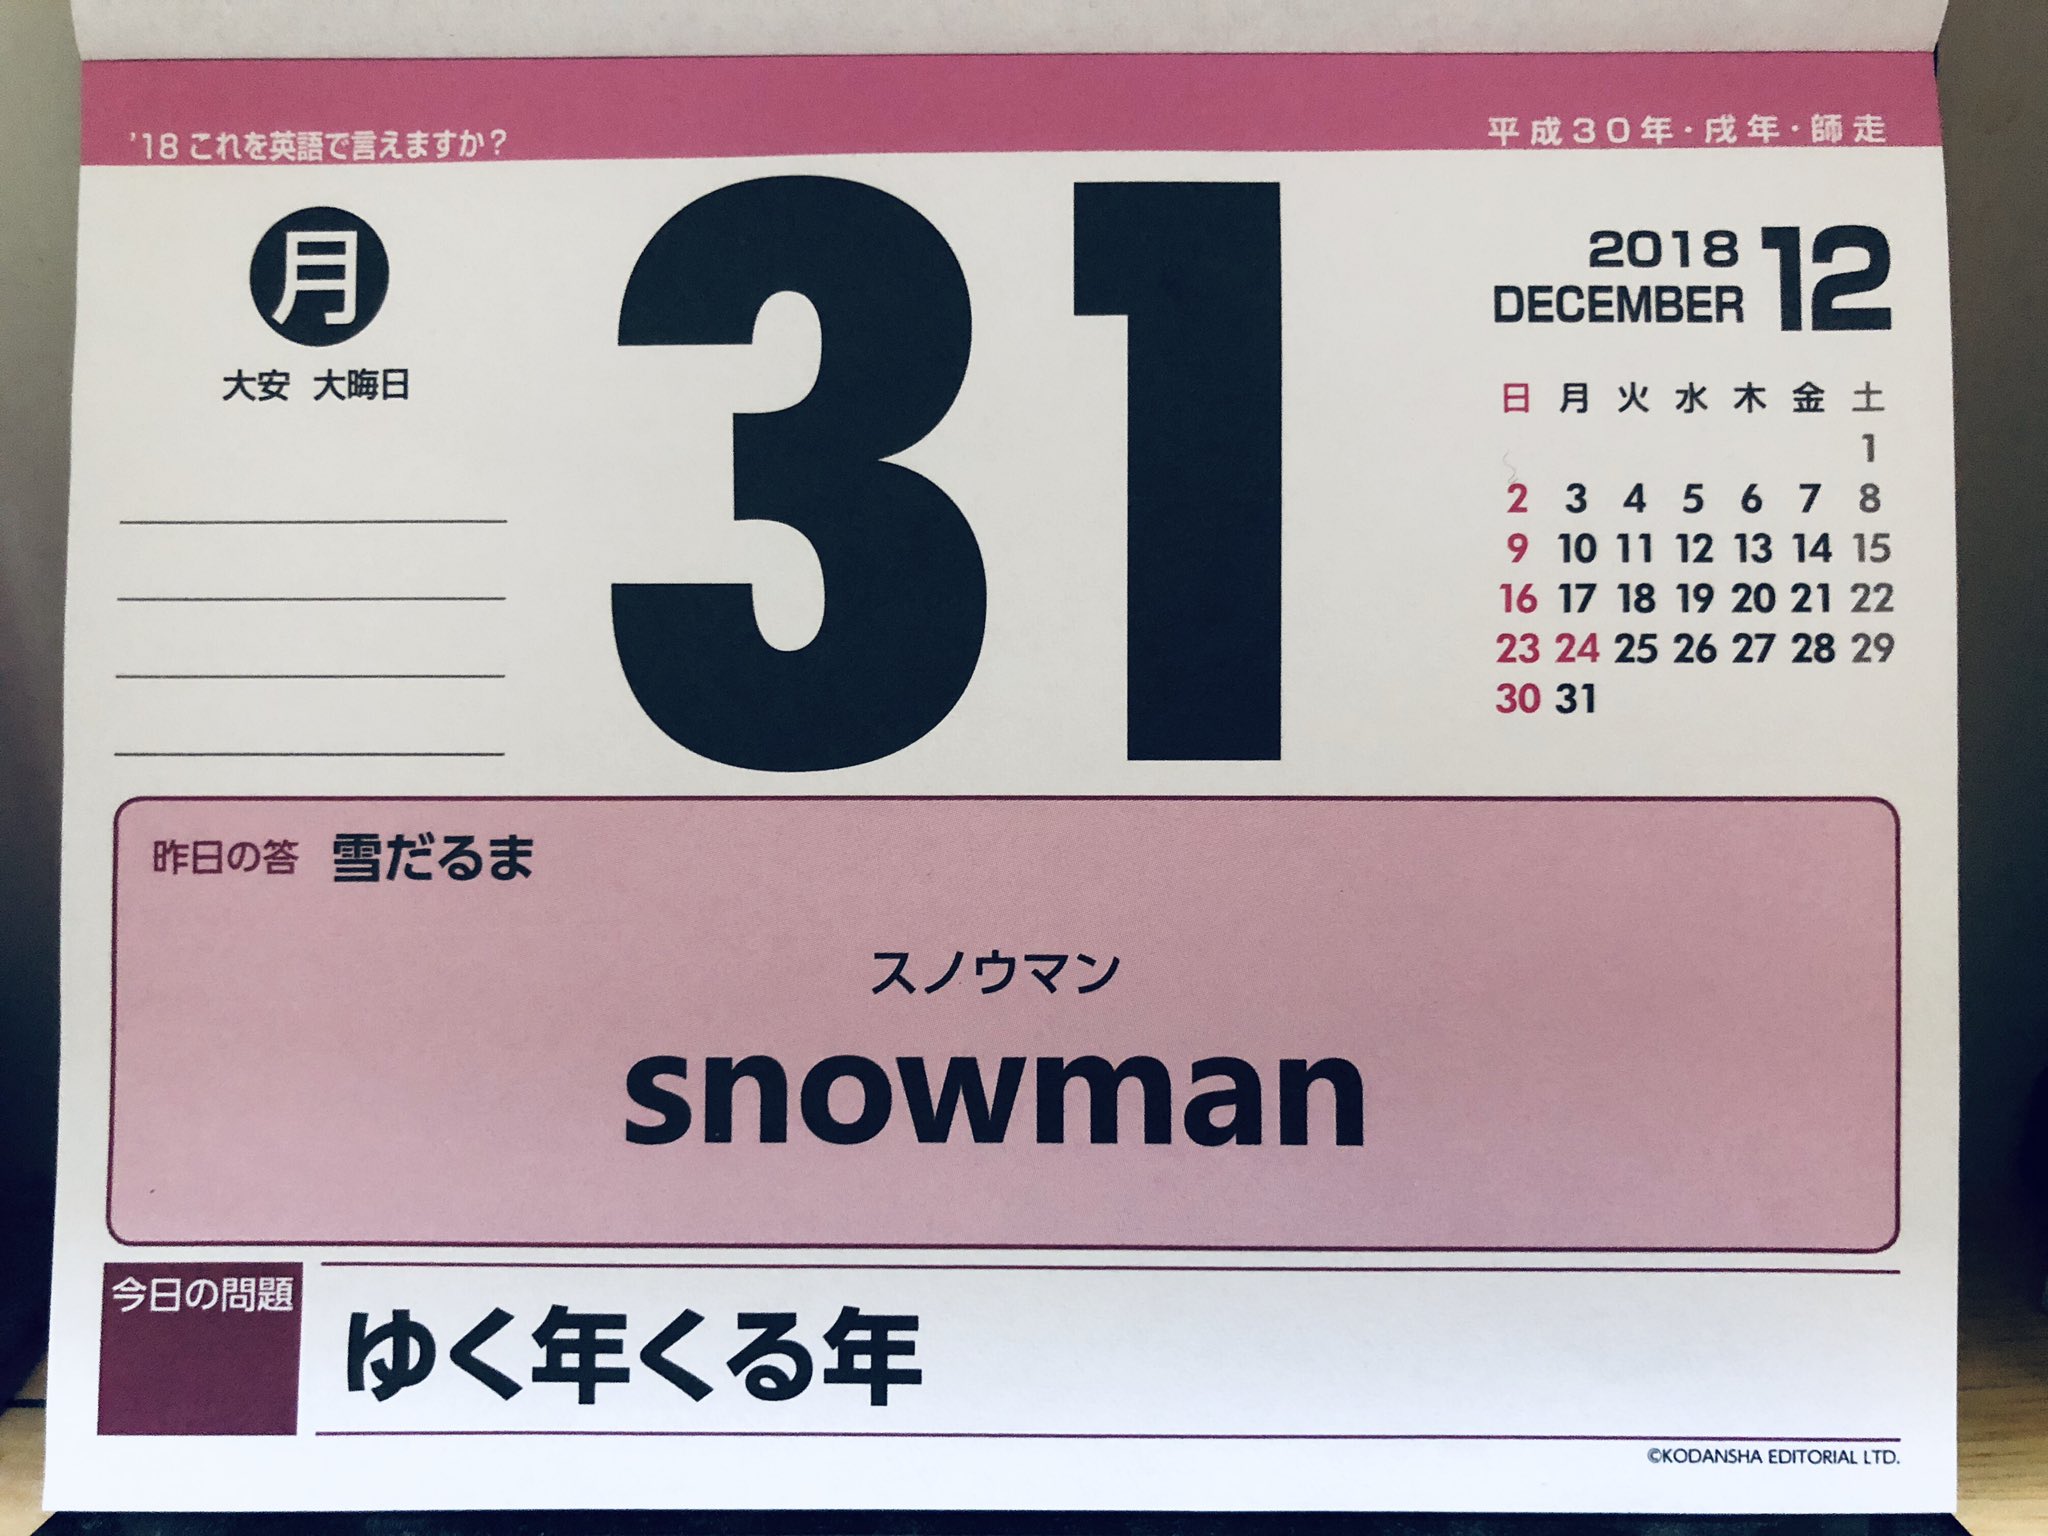 Hikalie 英語の日めくりカレンダー 最後が Snowman で なんだかとってもいい気分 終わりよければすべて良し 18年 お疲れ様でした T Co Xmaks60fes Twitter